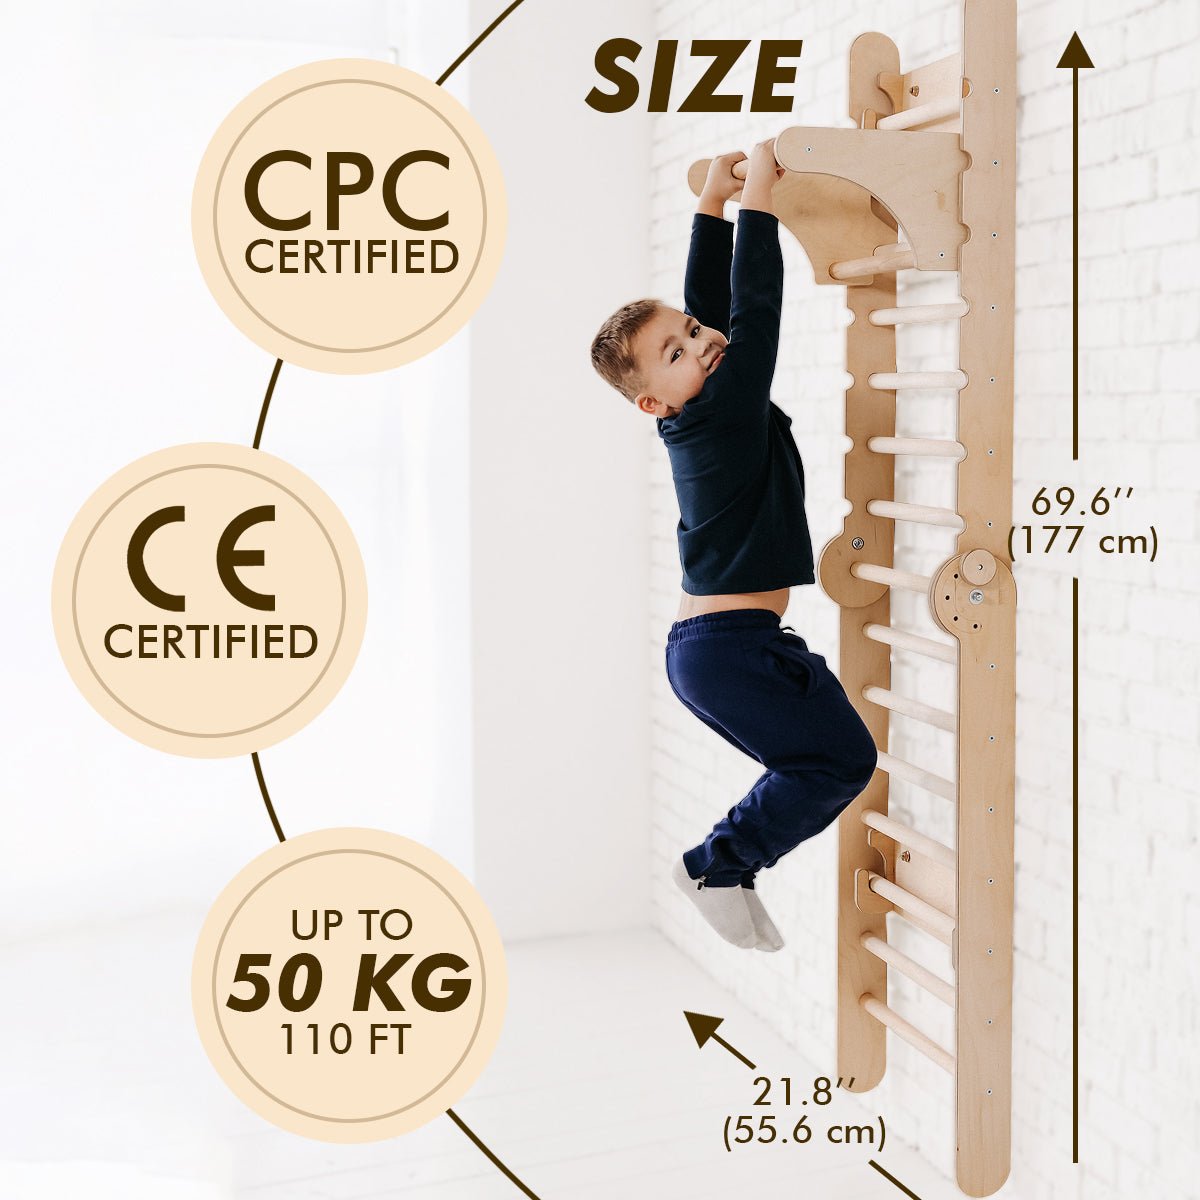 4in1 Climbing Set: Wooden Swedish Wall + Swing Set + Slide Board + Triangle Ladder